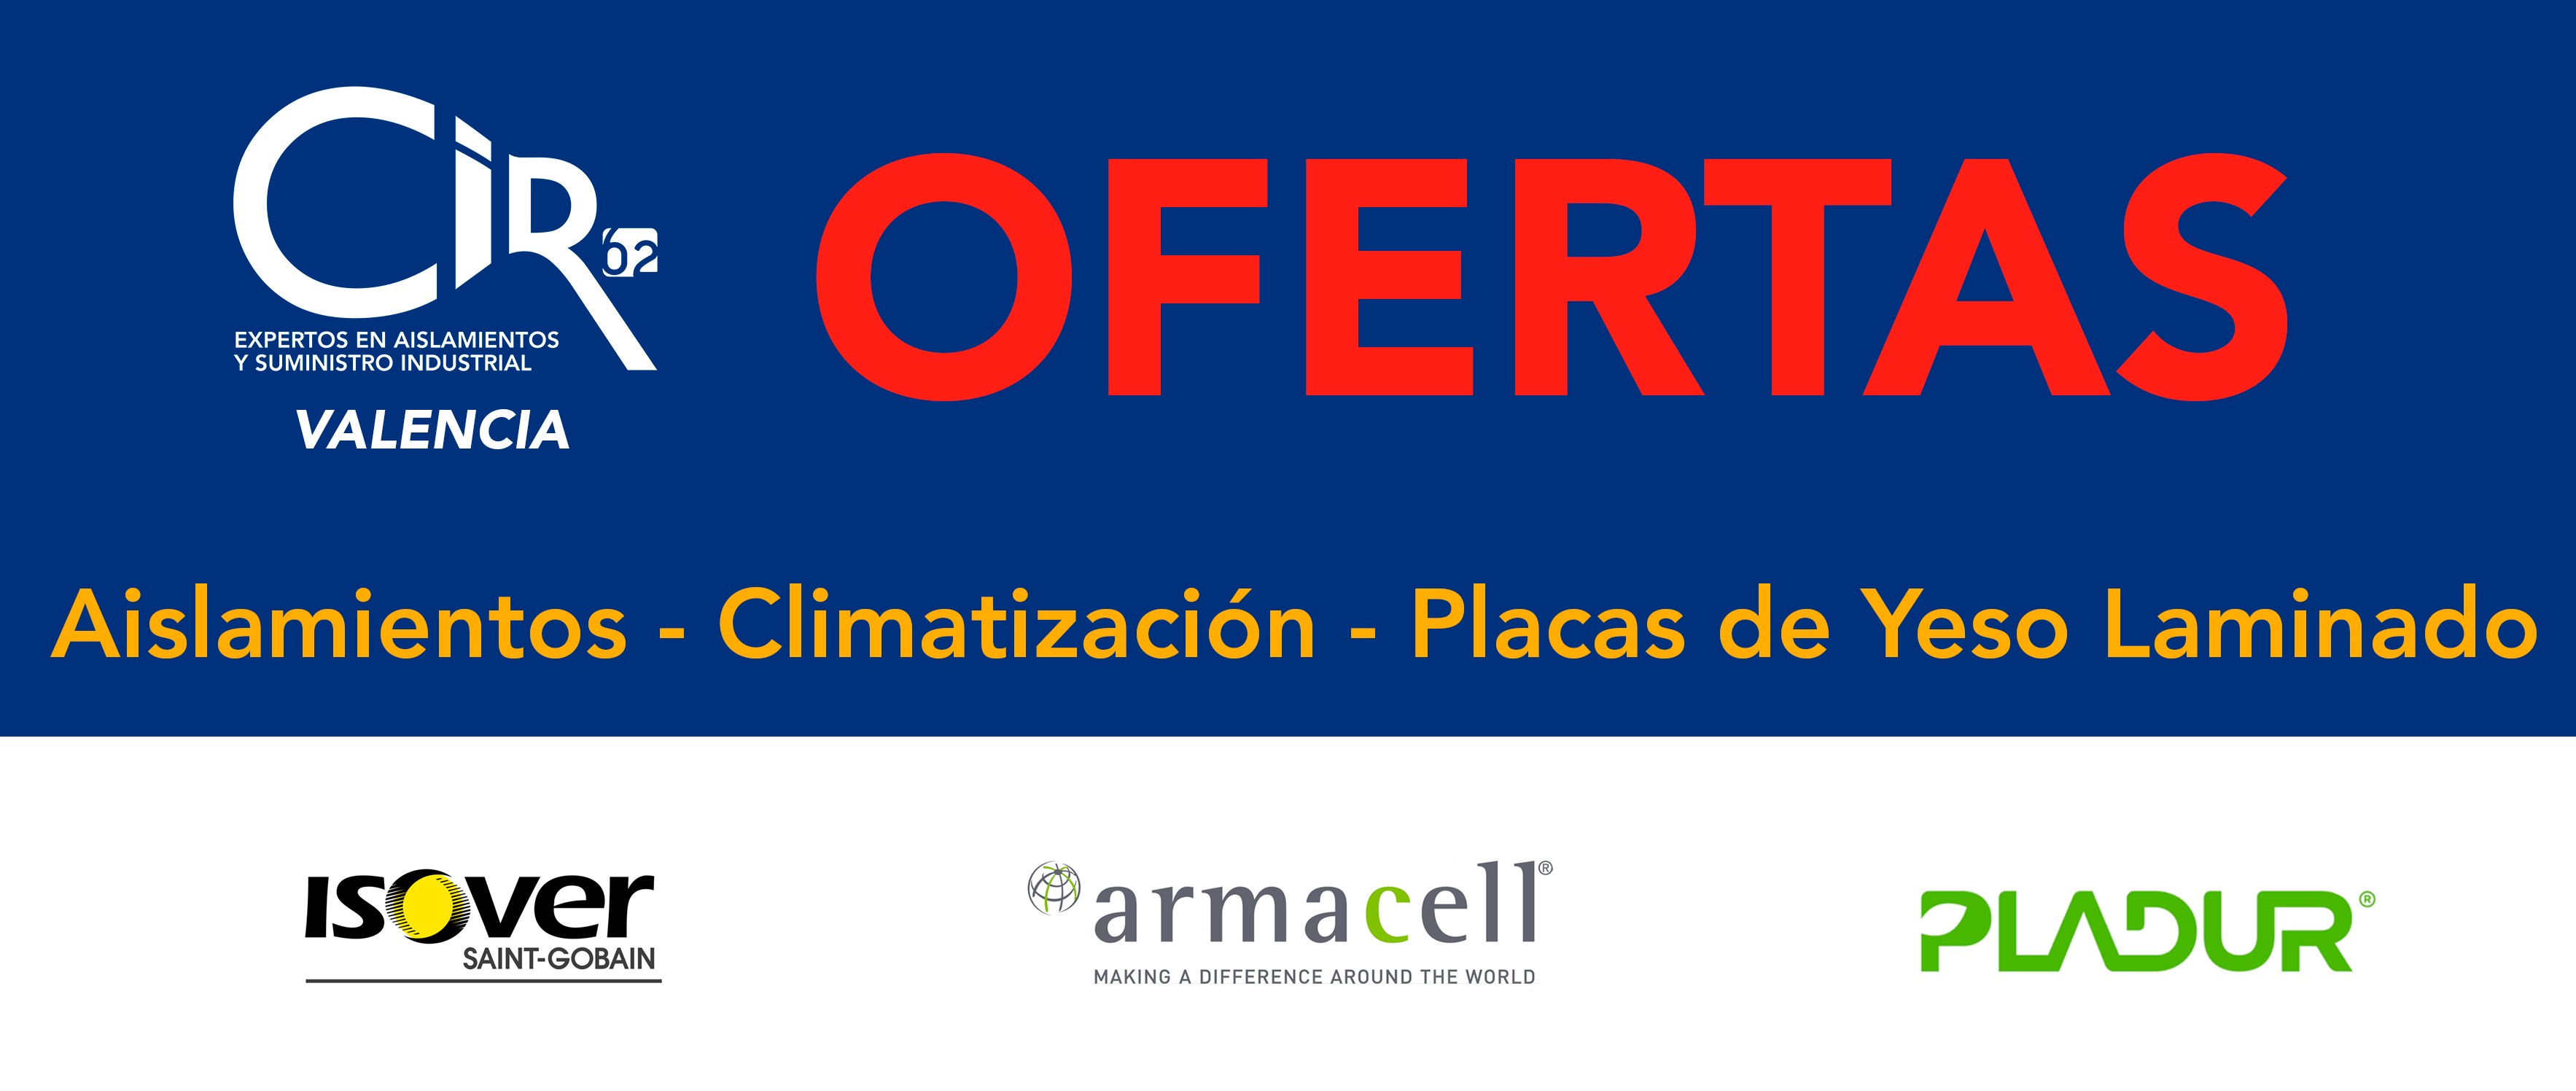 ¡OFERTAS CIR62 VALENCIA! Aislamiento - Climatización - Placas de Yeso Laminado ¡Infórmate!